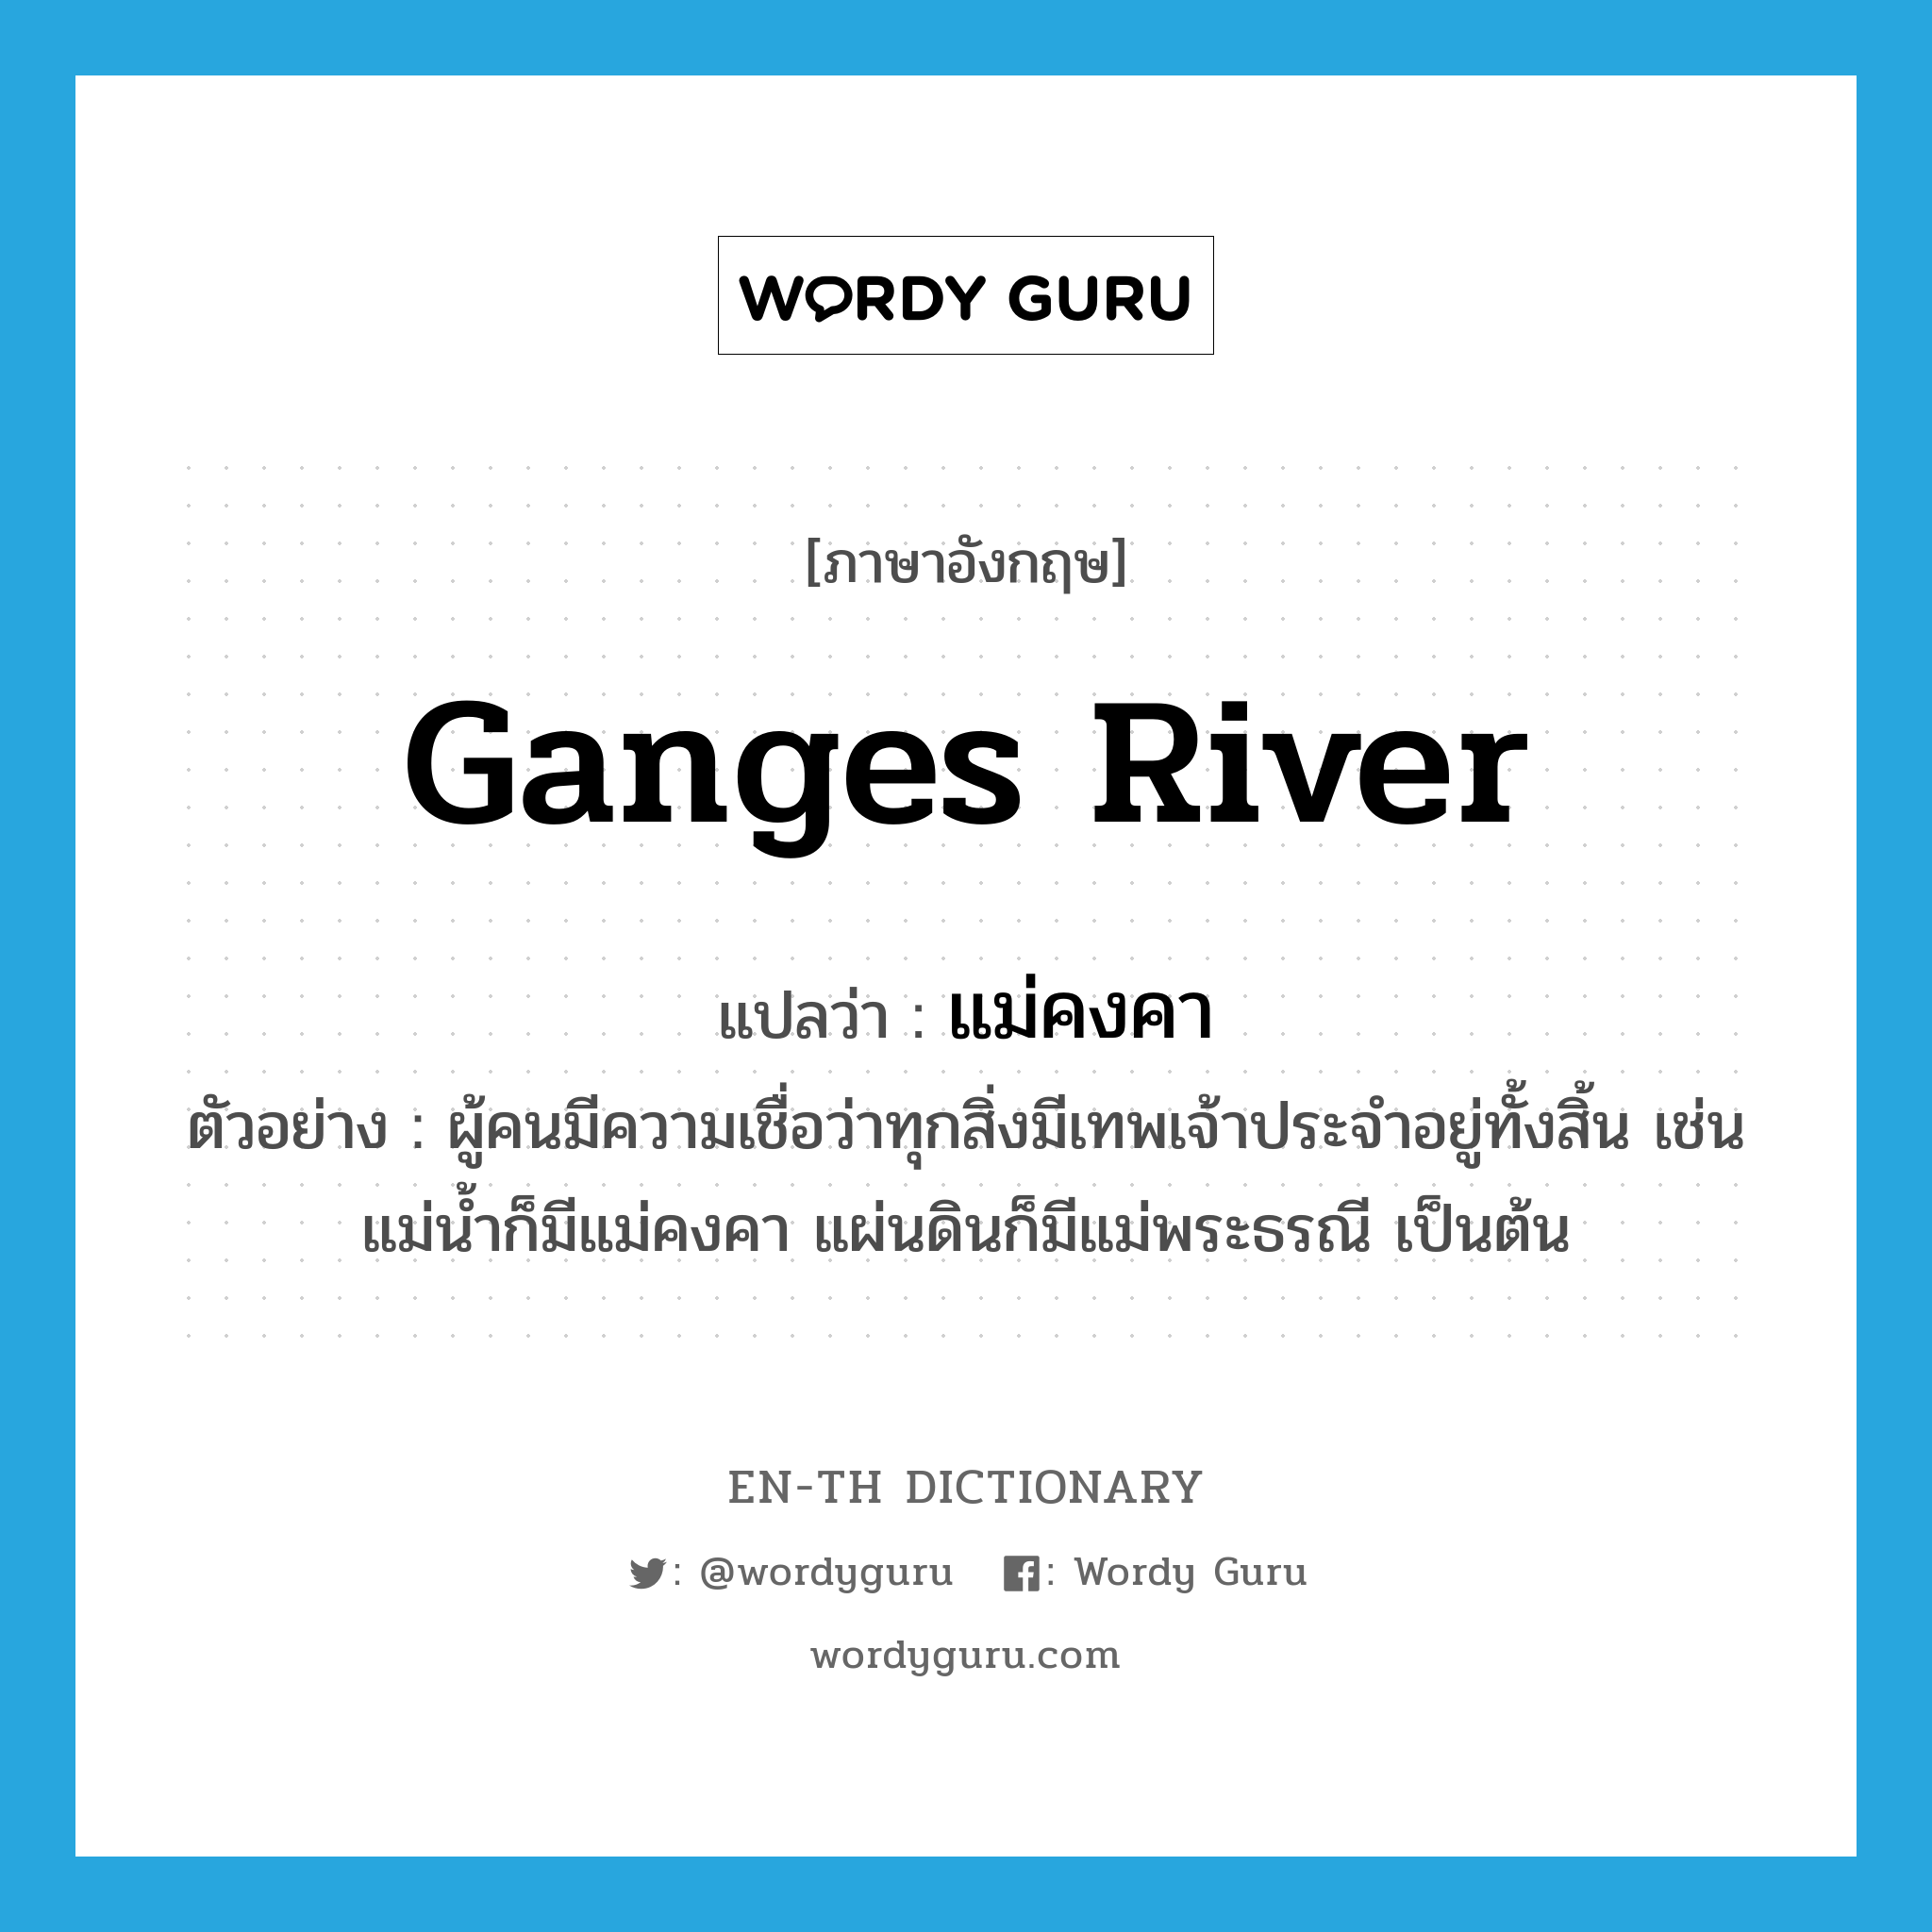 แม่คงคา ภาษาอังกฤษ?, คำศัพท์ภาษาอังกฤษ แม่คงคา แปลว่า Ganges river ประเภท N ตัวอย่าง ผู้คนมีความเชื่อว่าทุกสิ่งมีเทพเจ้าประจำอยู่ทั้งสิ้น เช่น แม่น้ำก็มีแม่คงคา แผ่นดินก็มีแม่พระธรณี เป็นต้น หมวด N